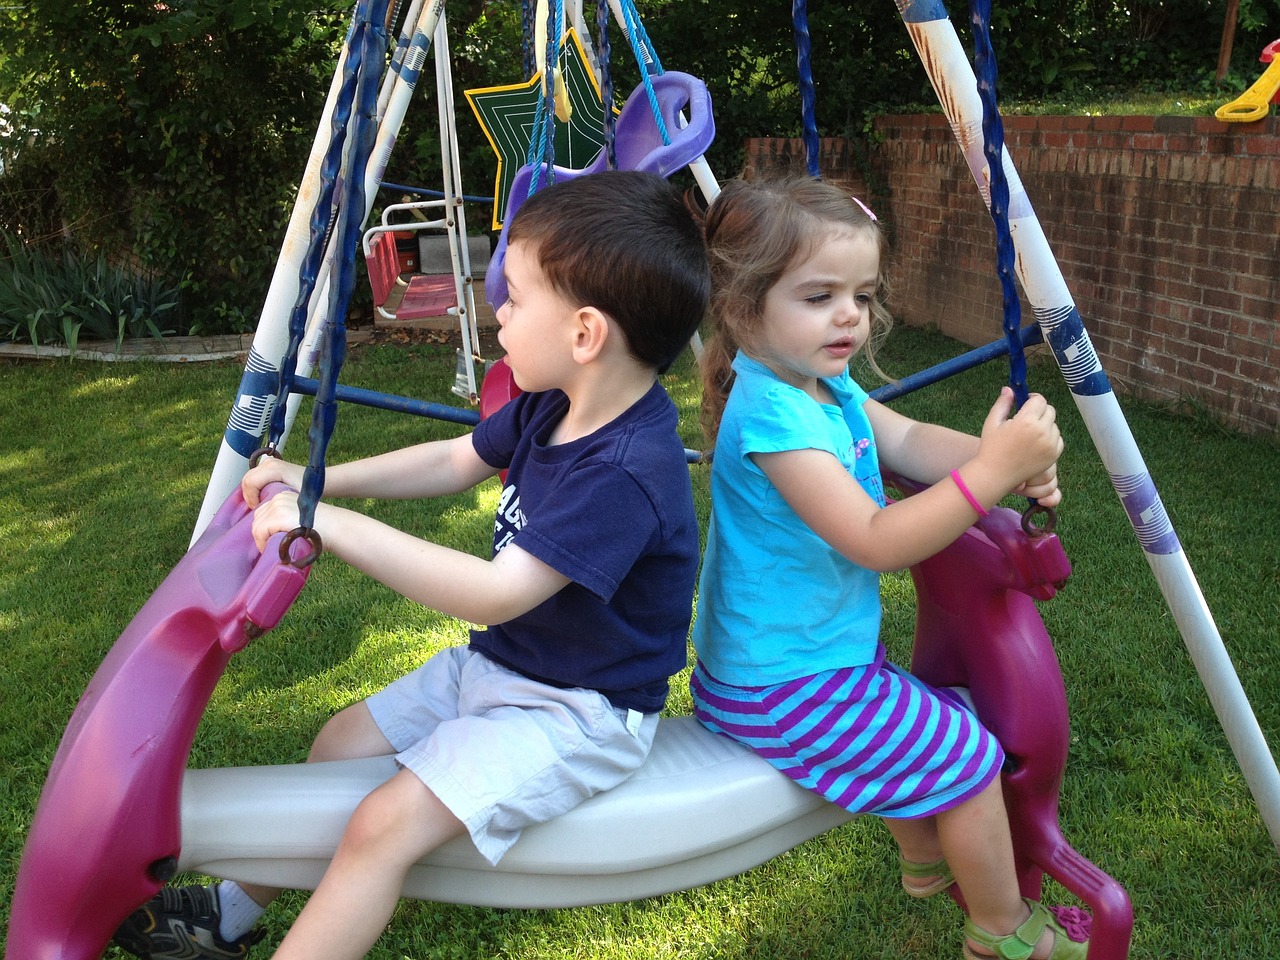 Zwei kleine Kinder auf einer Schaukel auf einem Spielplatz.